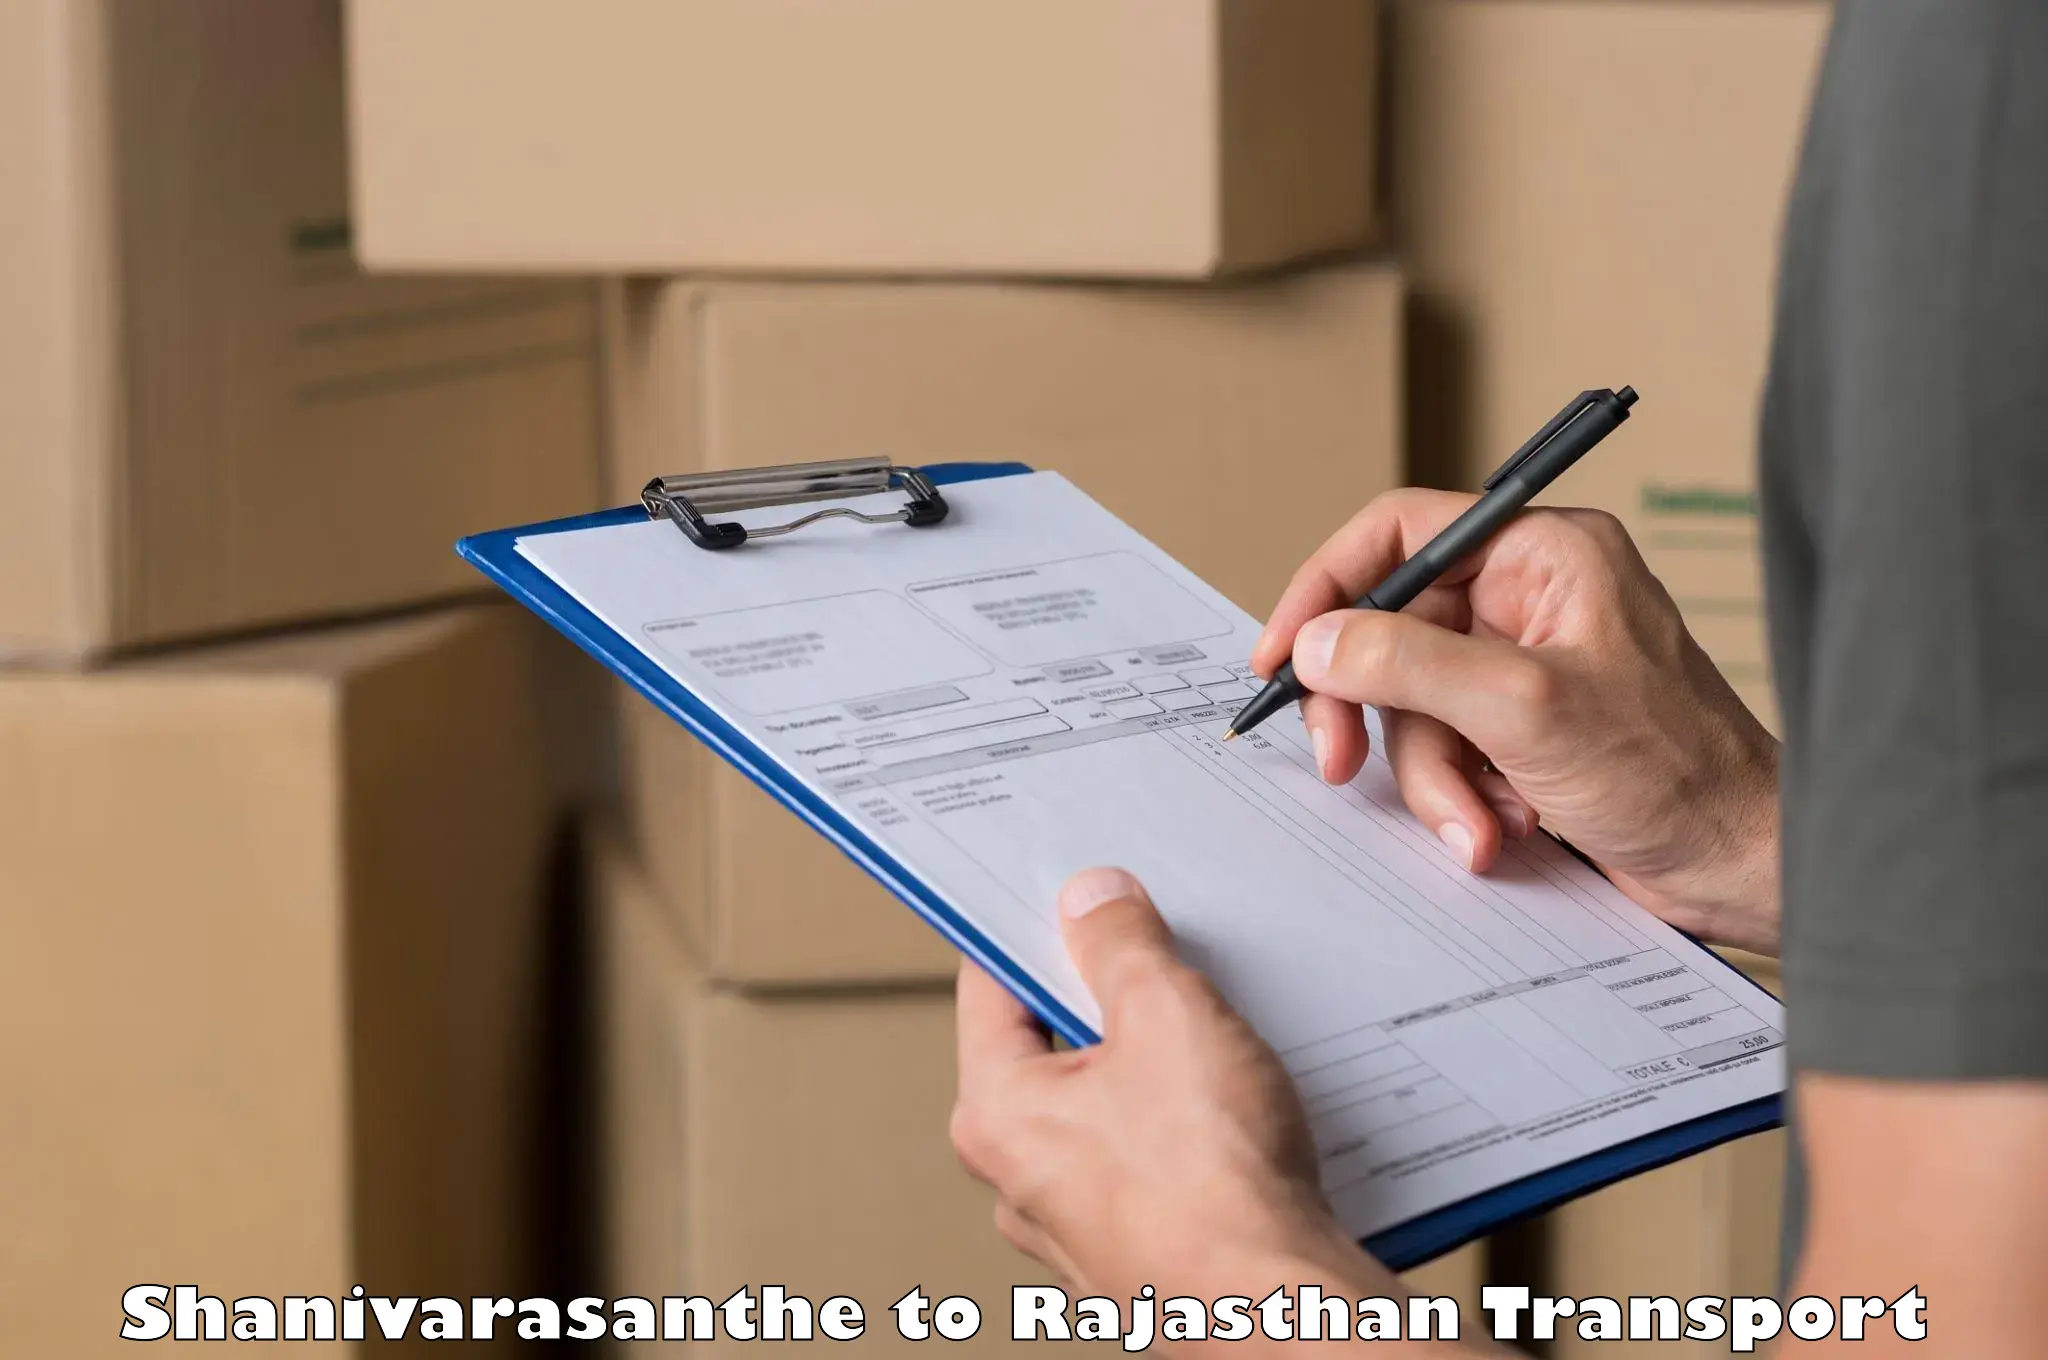 Commercial transport service Shanivarasanthe to Malsisar